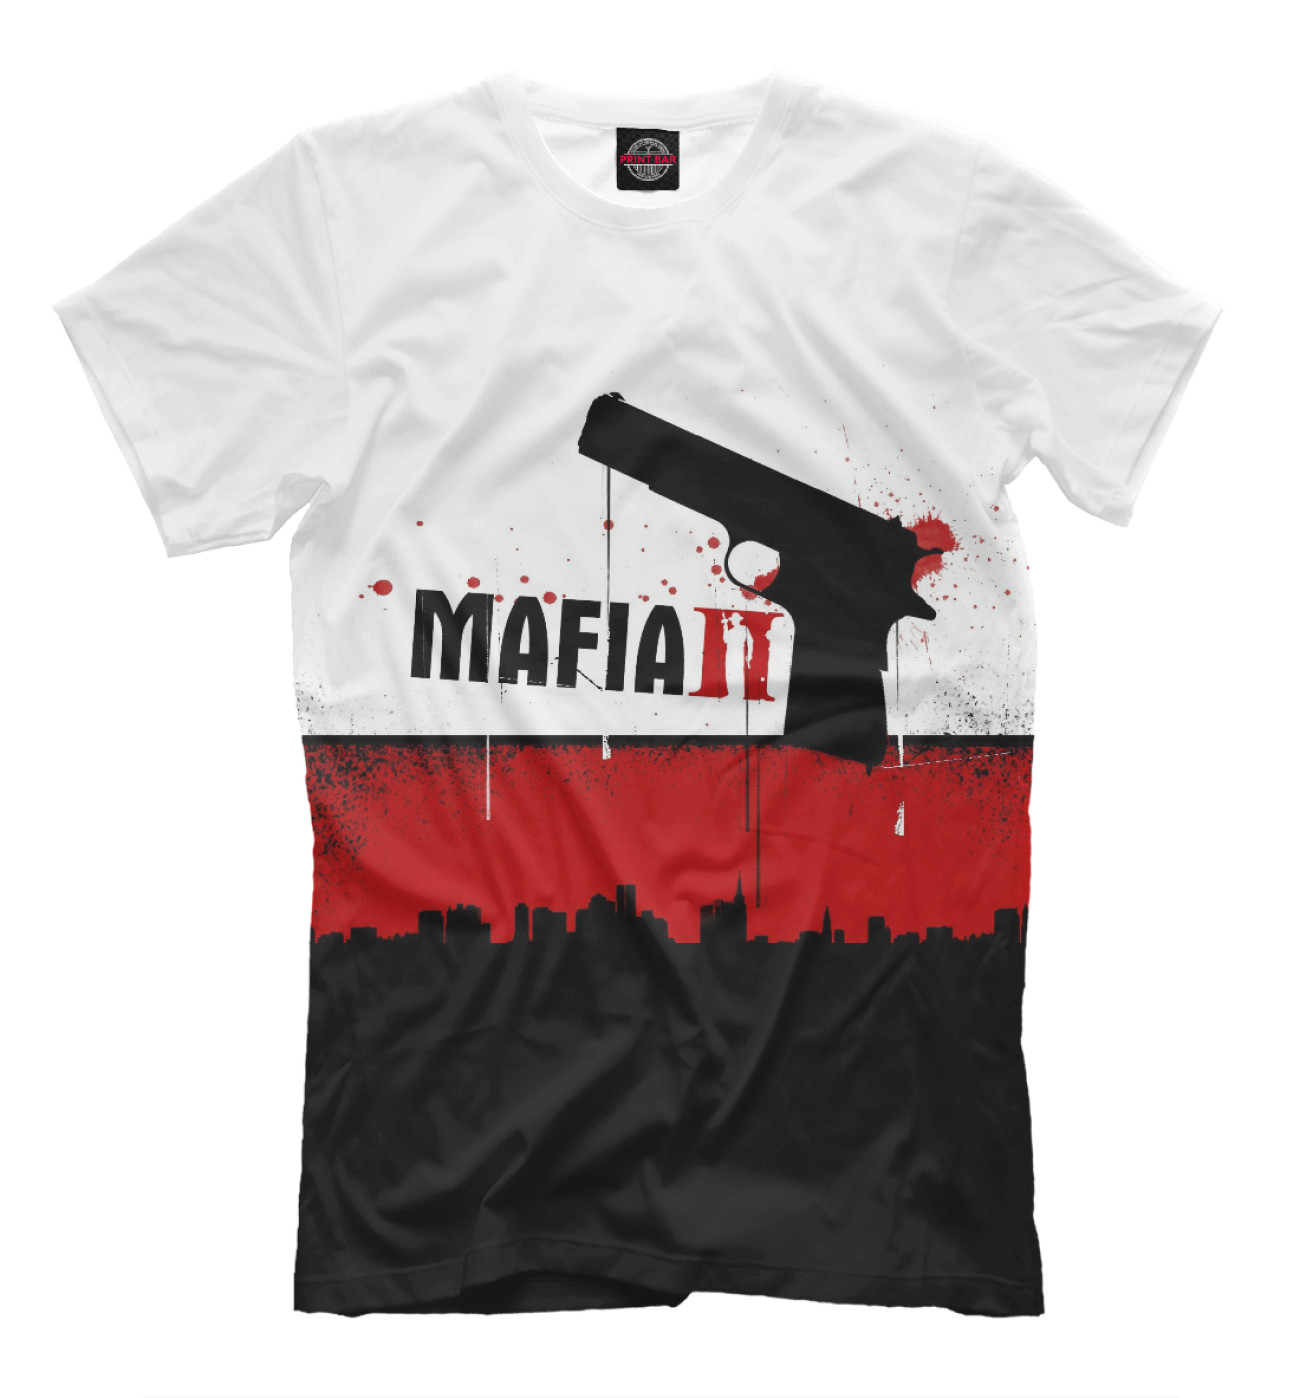 Мужская Футболка Mafia II, артикул: RPG-181849-fut-2